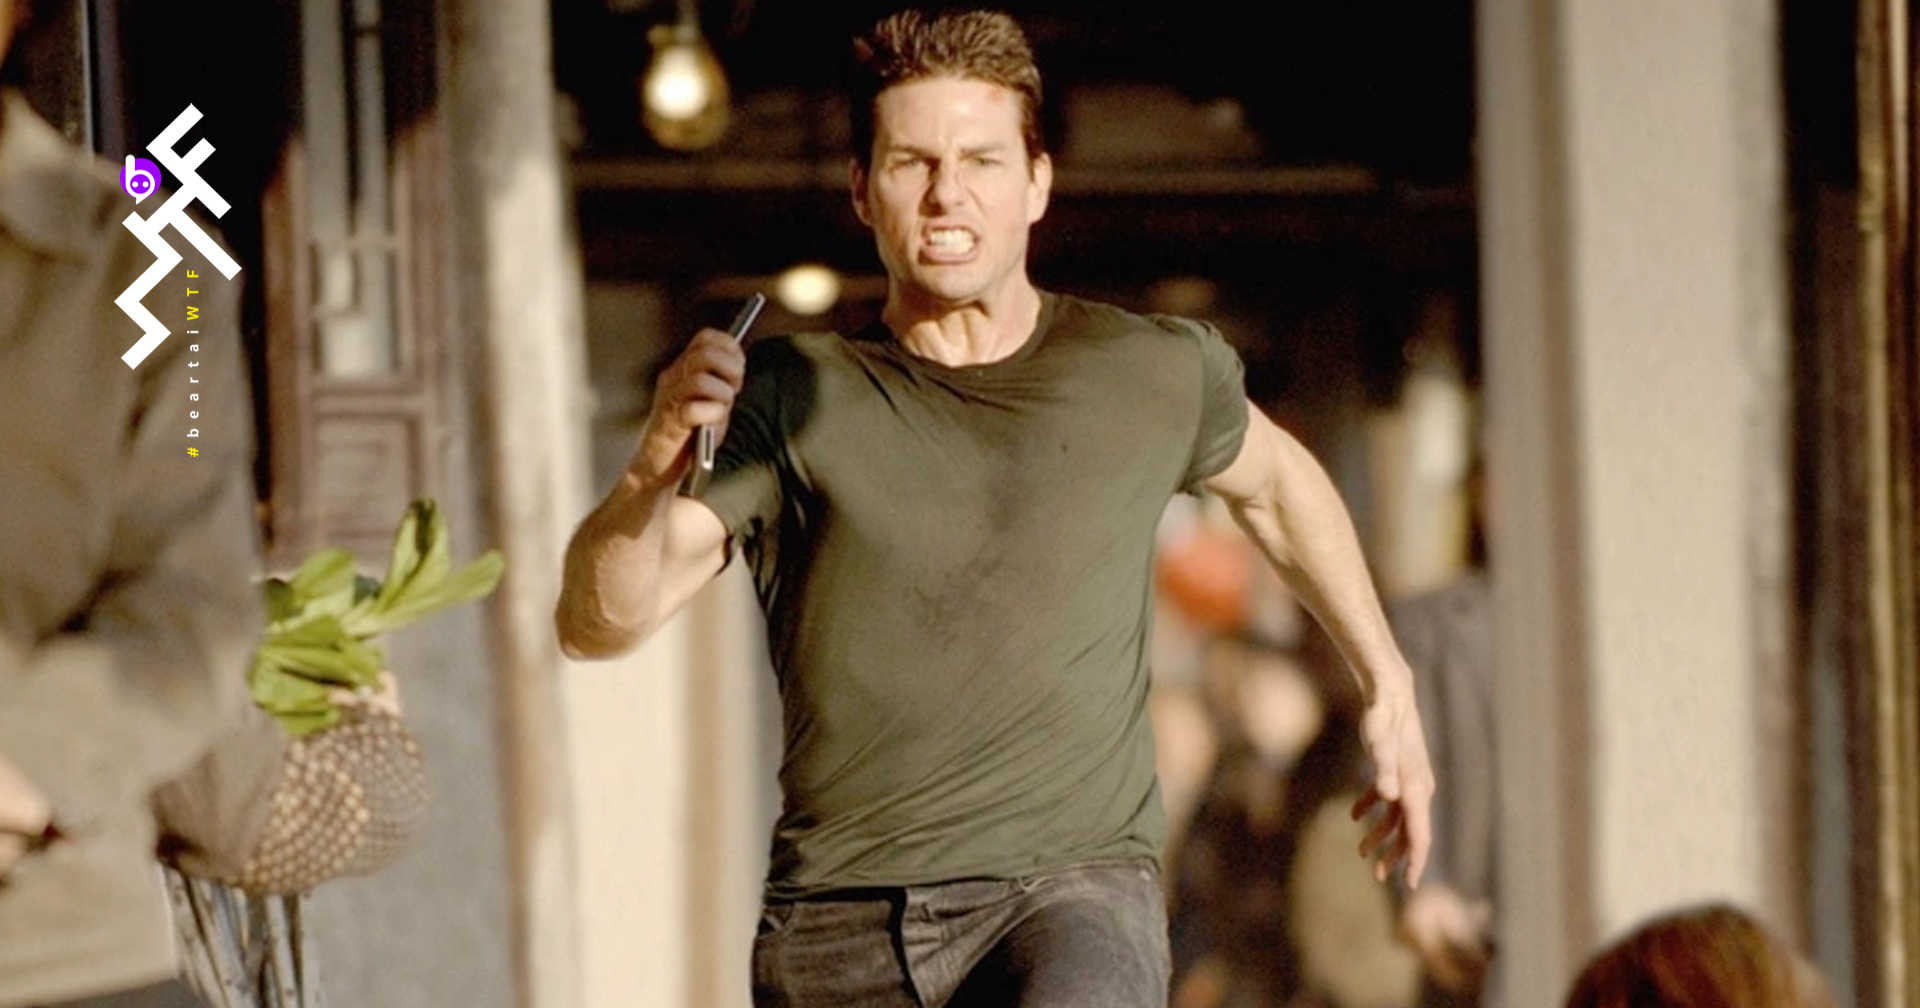 Tom Cruise ไม่อนุญาต ให้ใครมาวิ่งขนาบเขาในหนังที่เป็นพระเอก